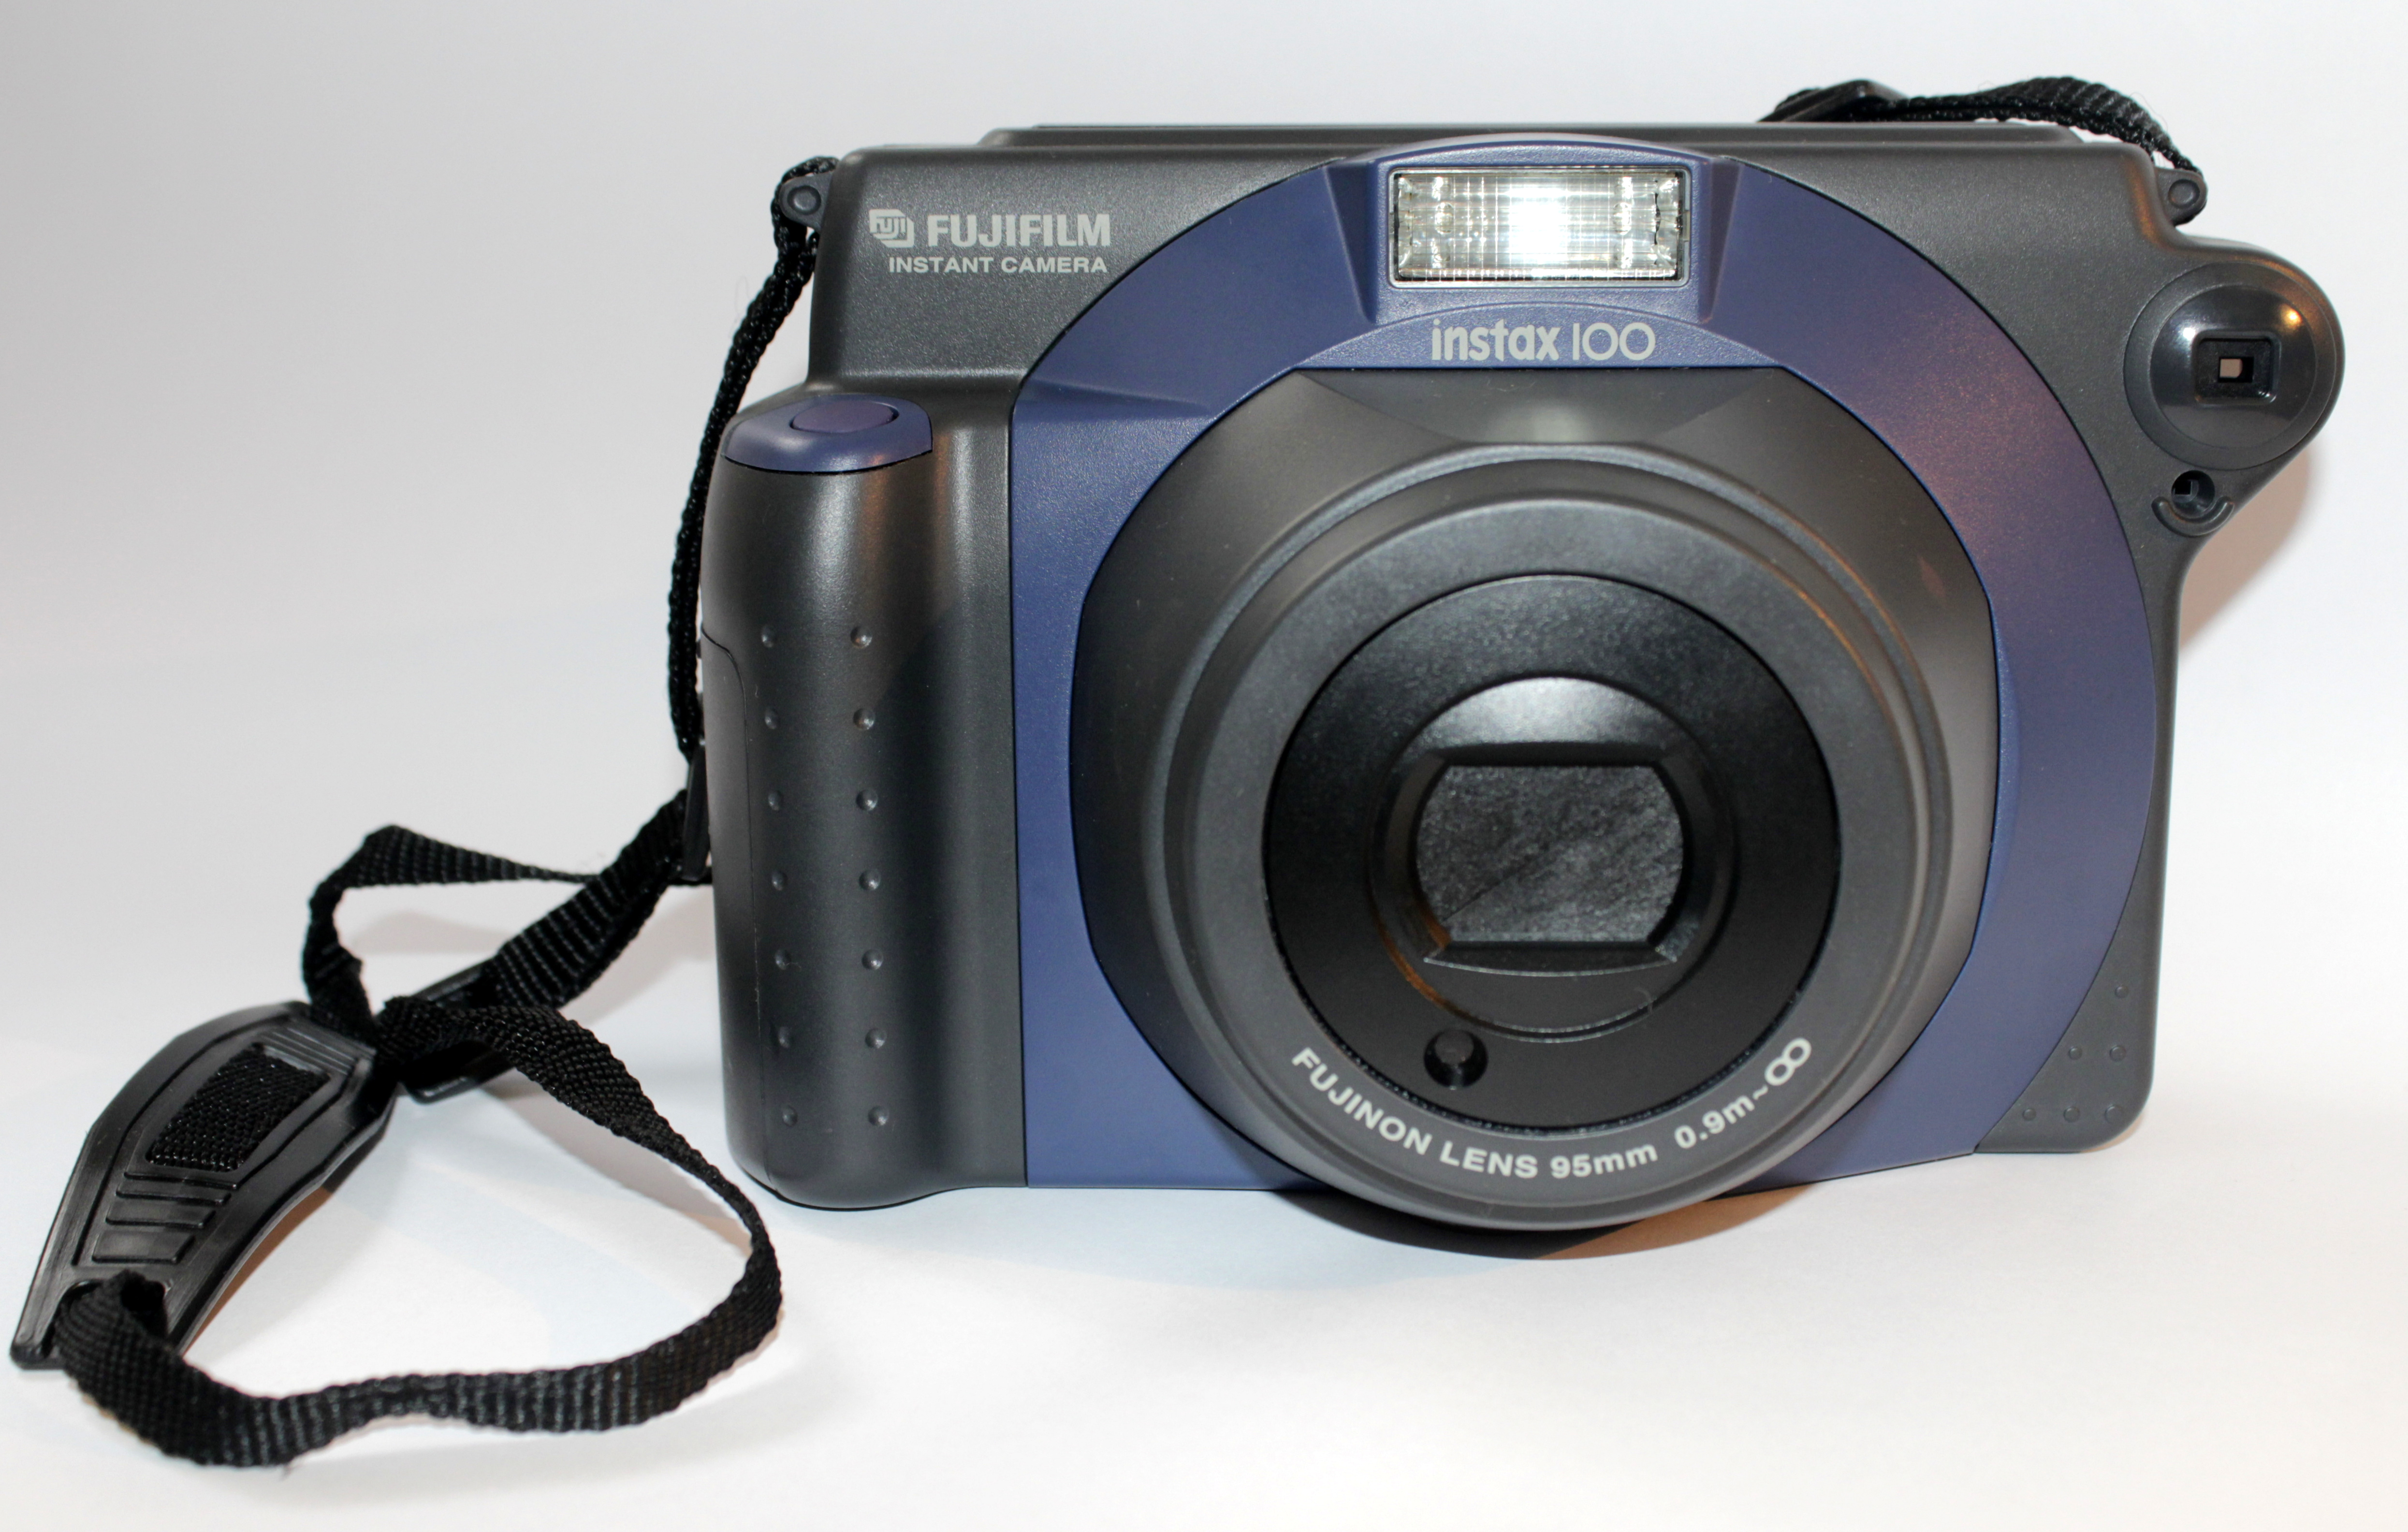 Druif Van streek Bedreven File:Fujifilm Instax 100 camera.JPG - Wikimedia Commons